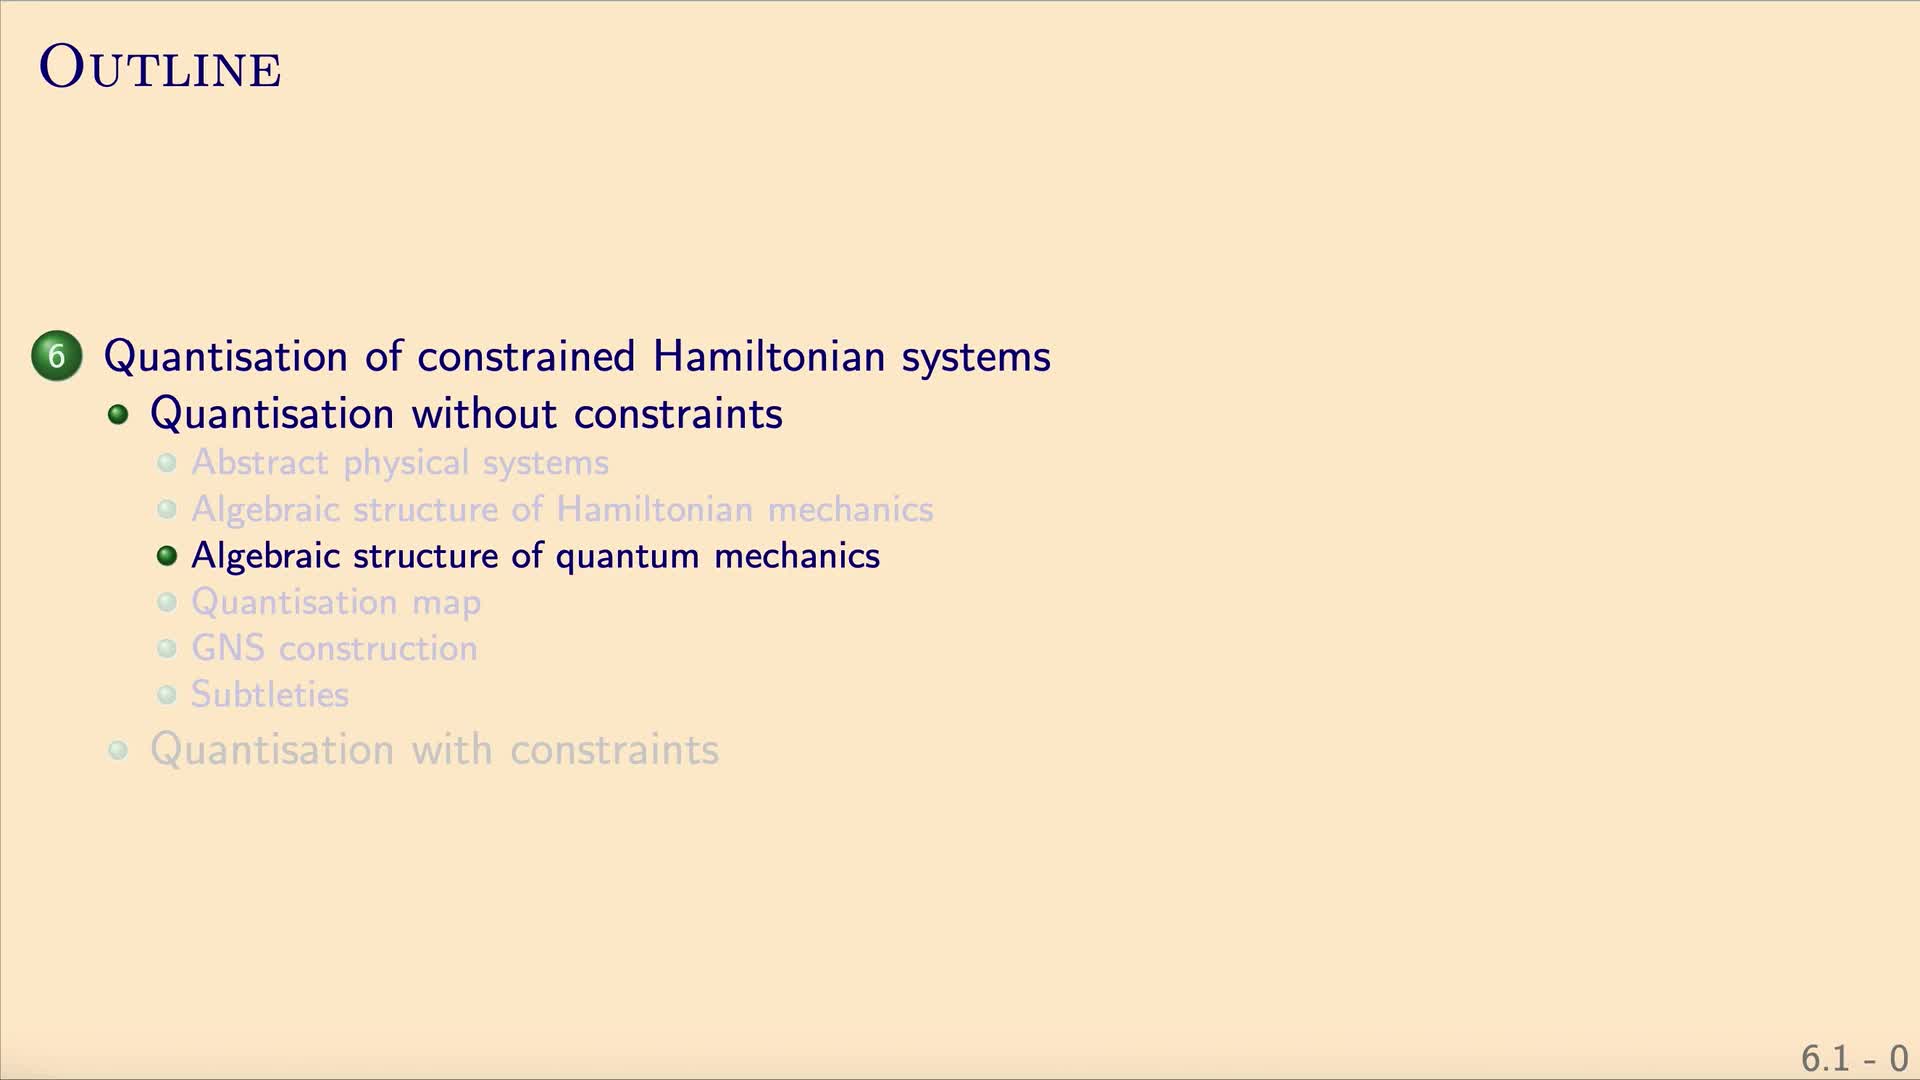 QG II: 6.1.3 - Algebraic structure of quantum mechanics